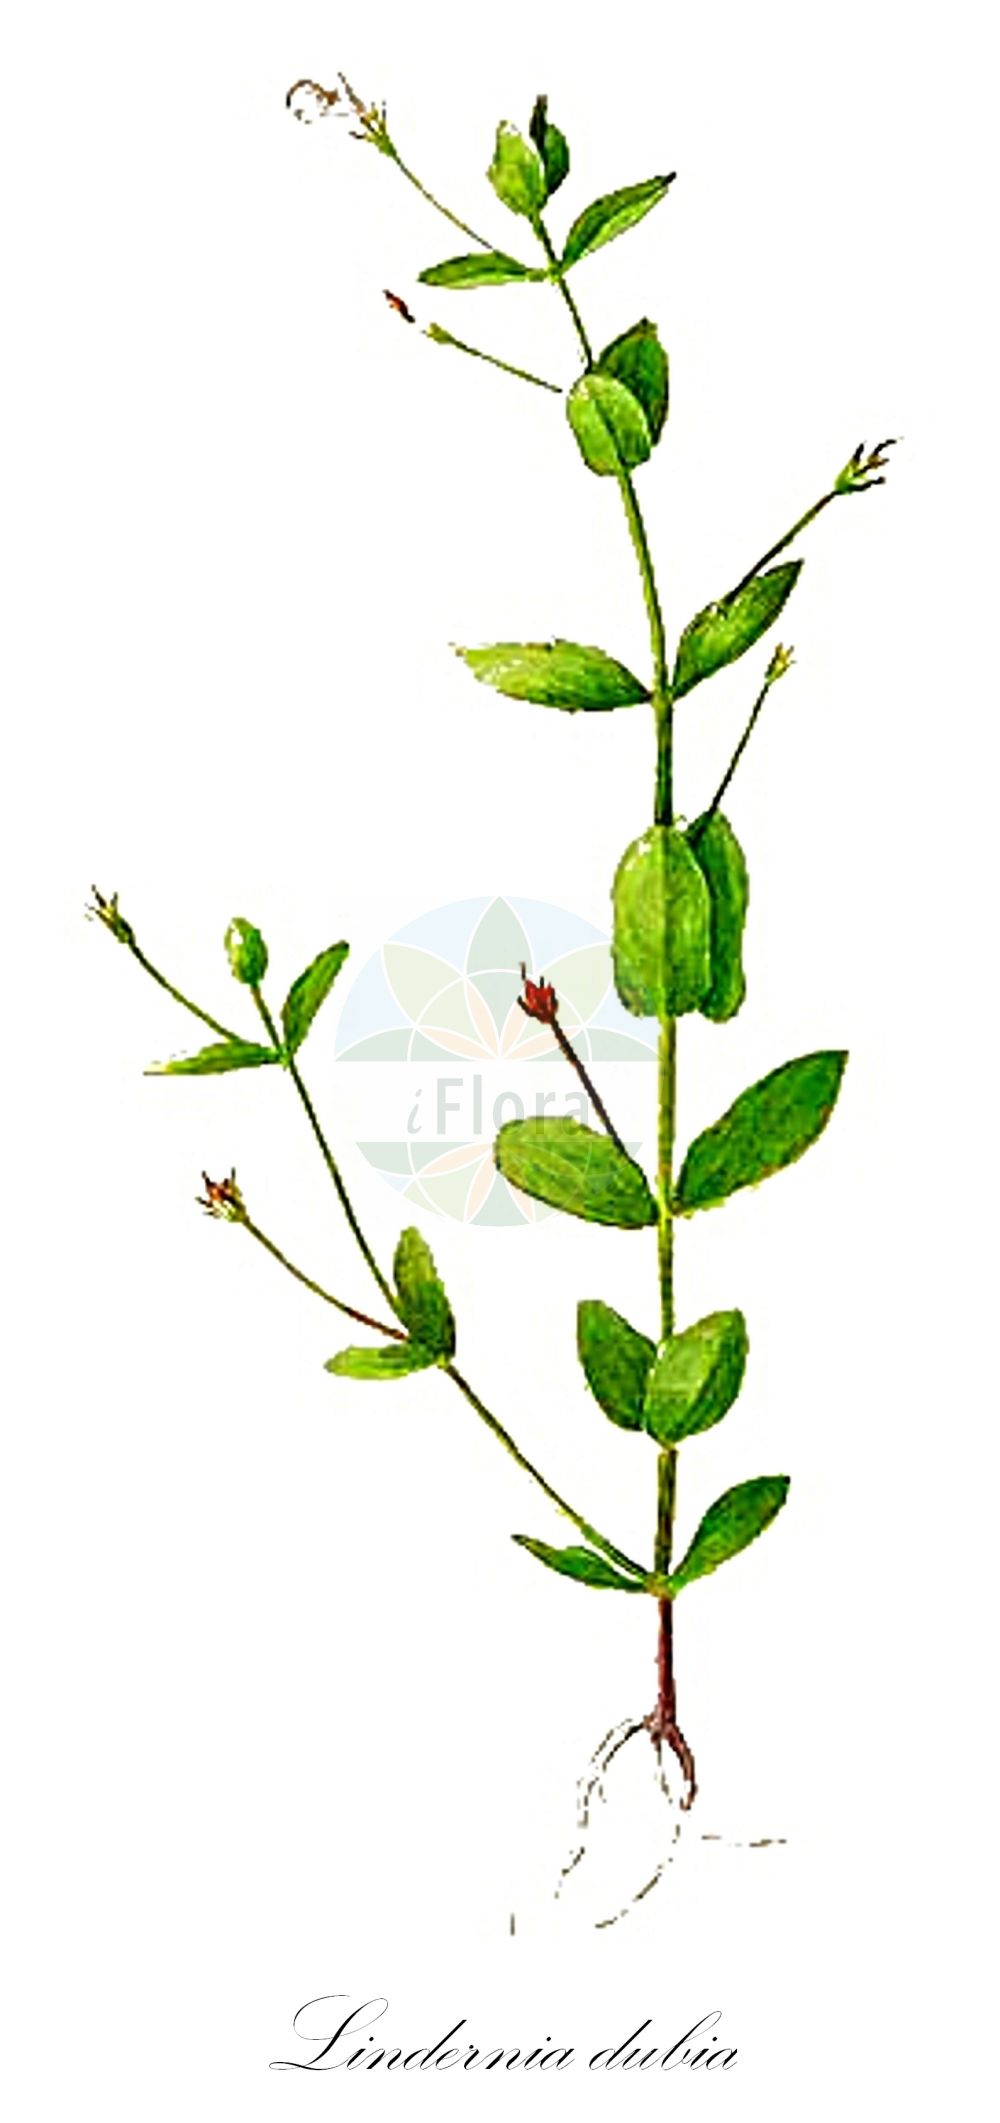 Historische Abbildung von Lindernia dubia (Großes Büchsenkraut - Clasping False-pimpernel). Das Bild zeigt Blatt, Bluete, Frucht und Same. ---- Historical Drawing of Lindernia dubia (Großes Büchsenkraut - Clasping False-pimpernel). The image is showing leaf, flower, fruit and seed.(Lindernia dubia,Großes Büchsenkraut,Clasping False-pimpernel,Gratiola dubia,Ilysanthes attenuata,Ilysanthes gratioloides,Ilysanthes riparia,Lindernia gratioloides,Lindernia dubia,Grosses Buechsenkraut,Clasping False-pimpernel,Yellowseed False-pimpernel,False Pimpernel,Low False Pimpernel,Lindernia,Büchsenkraut,False Pimpernel,Linderniaceae,Büchsenkrautgewächse,False Pimpernel family,Blatt,Bluete,Frucht,Same,leaf,flower,fruit,seed,Sharp (1888-1910))